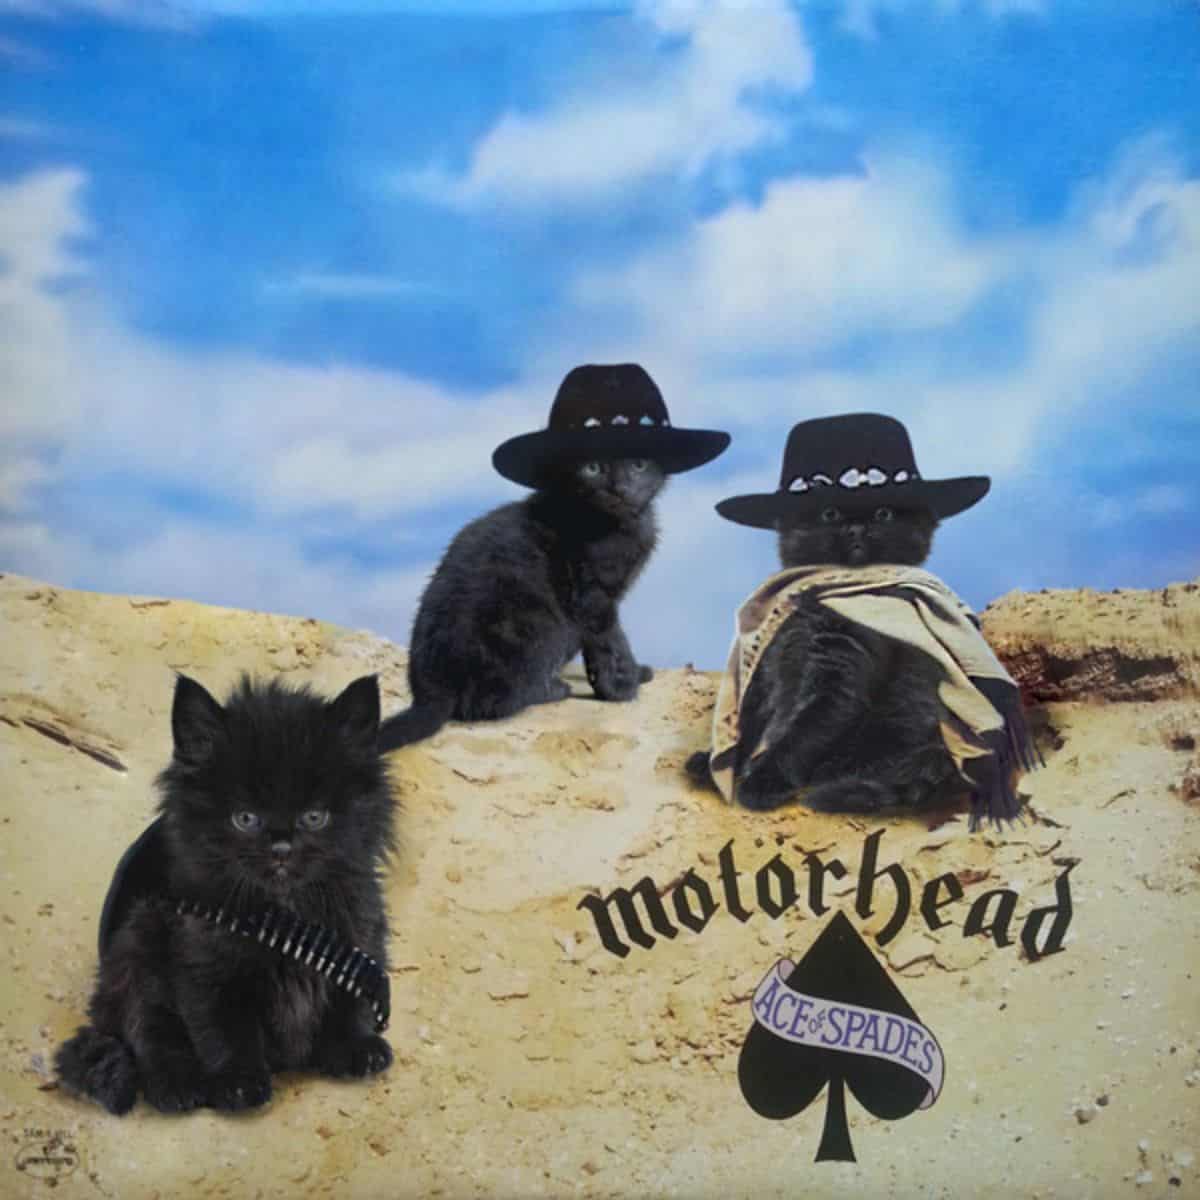 cat version of motorhead's album cover